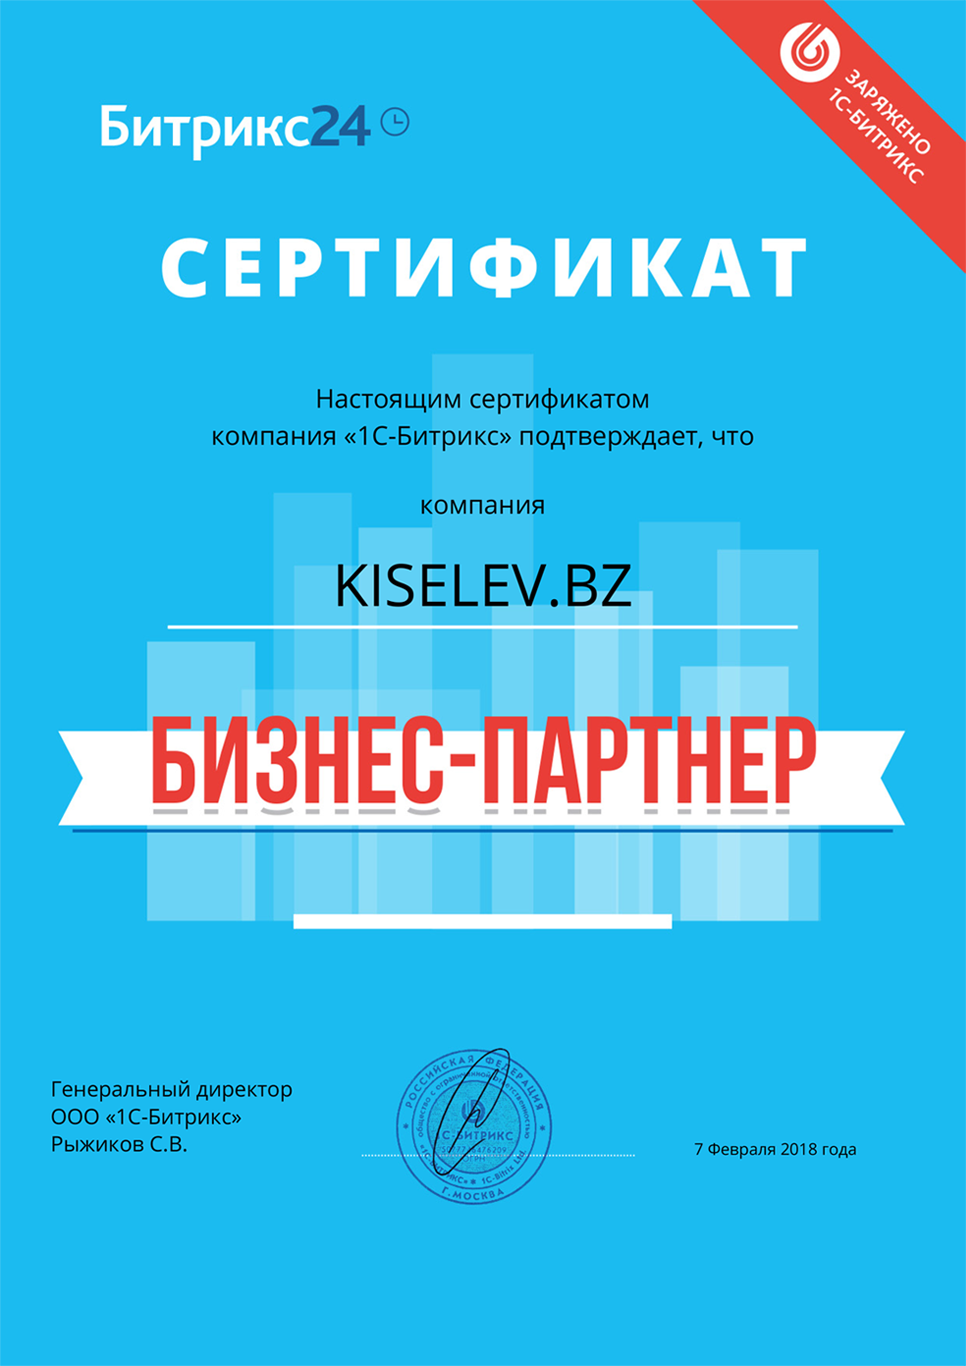 Сертификат партнёра по АМОСРМ в Новороссийске